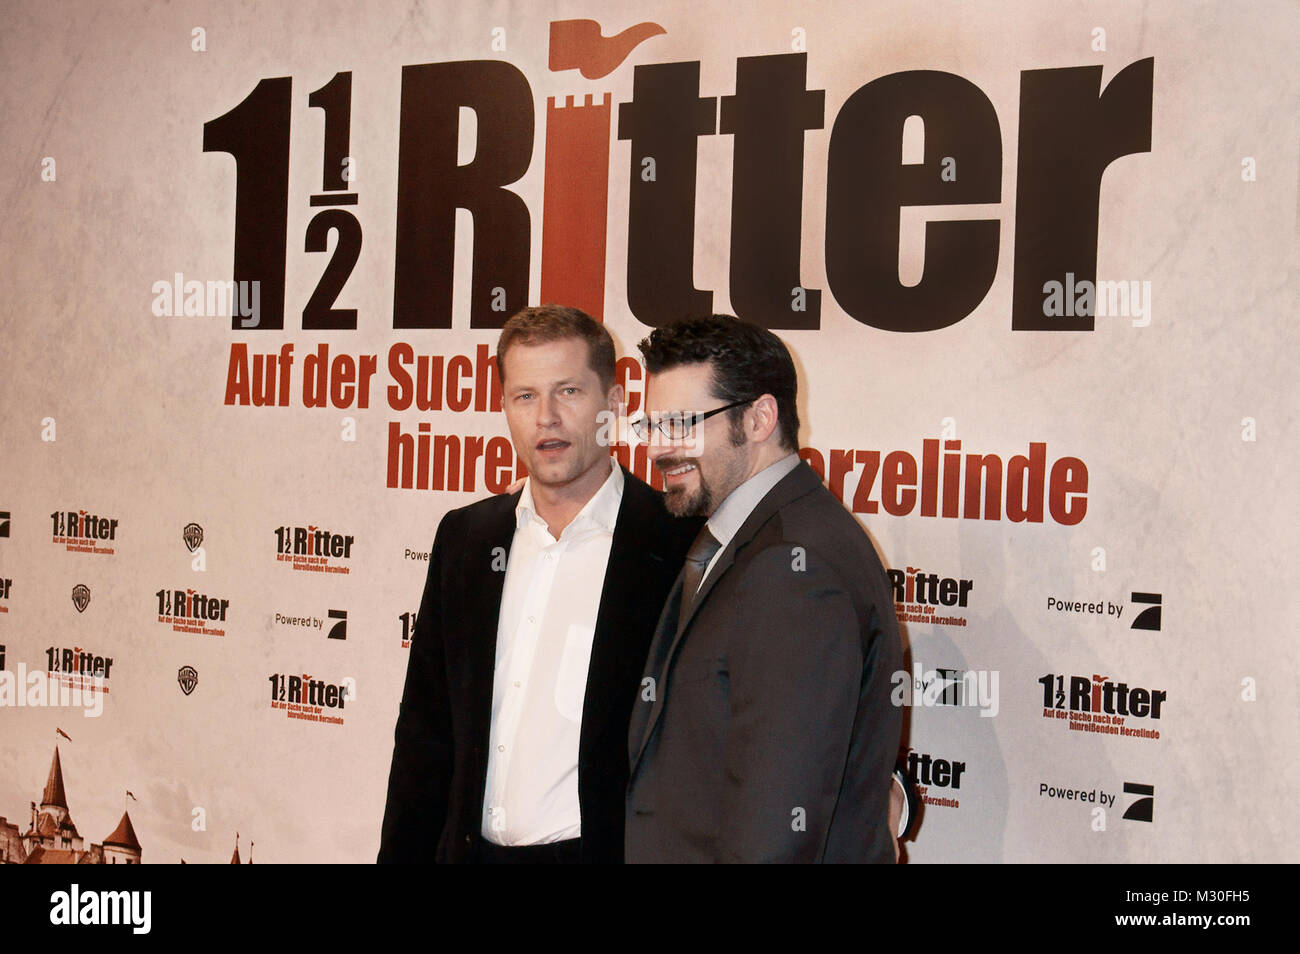 Til Schweiger, Rick Kavanian,bei der Premiere von '1 ½ Ritter'  >Auf der Suche nach der hinreißenden Herzelinde< im Berliner CinemaxX am Potsdamer Platz am 15.12.2008 Stock Photo